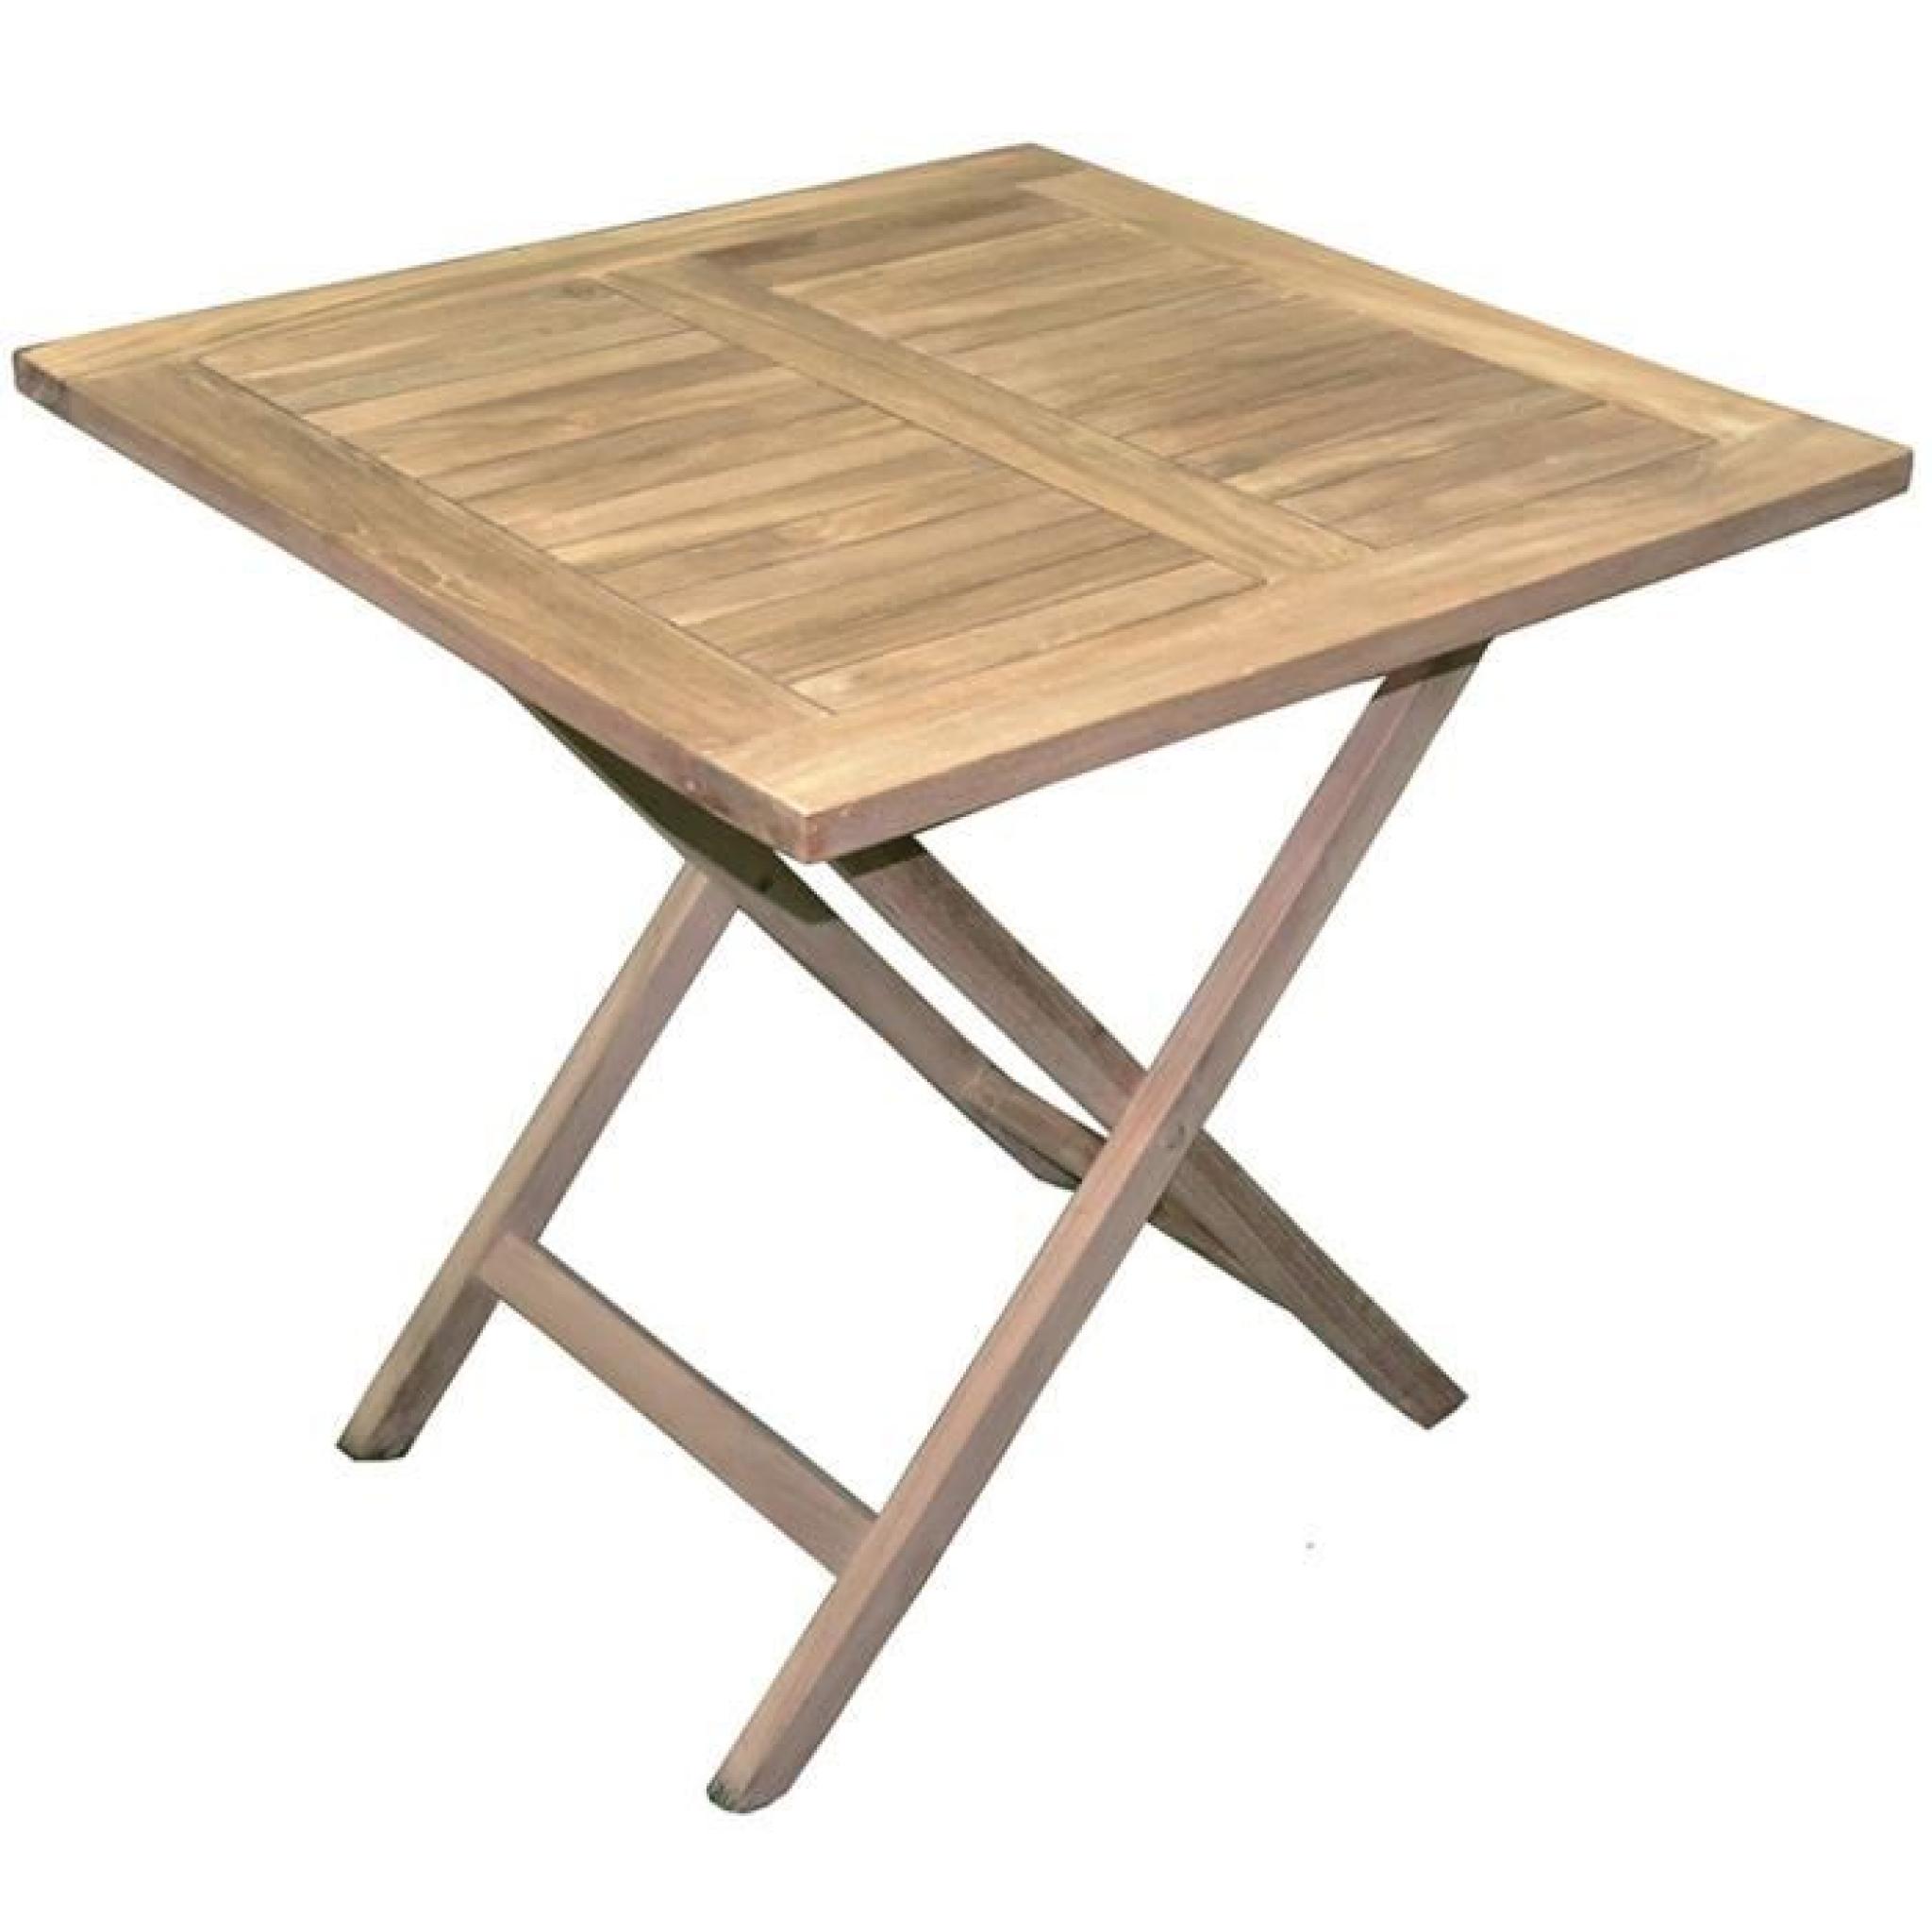 Table de jardin pliante forme carrée en bois teck - Dim : 80 x 80 cm